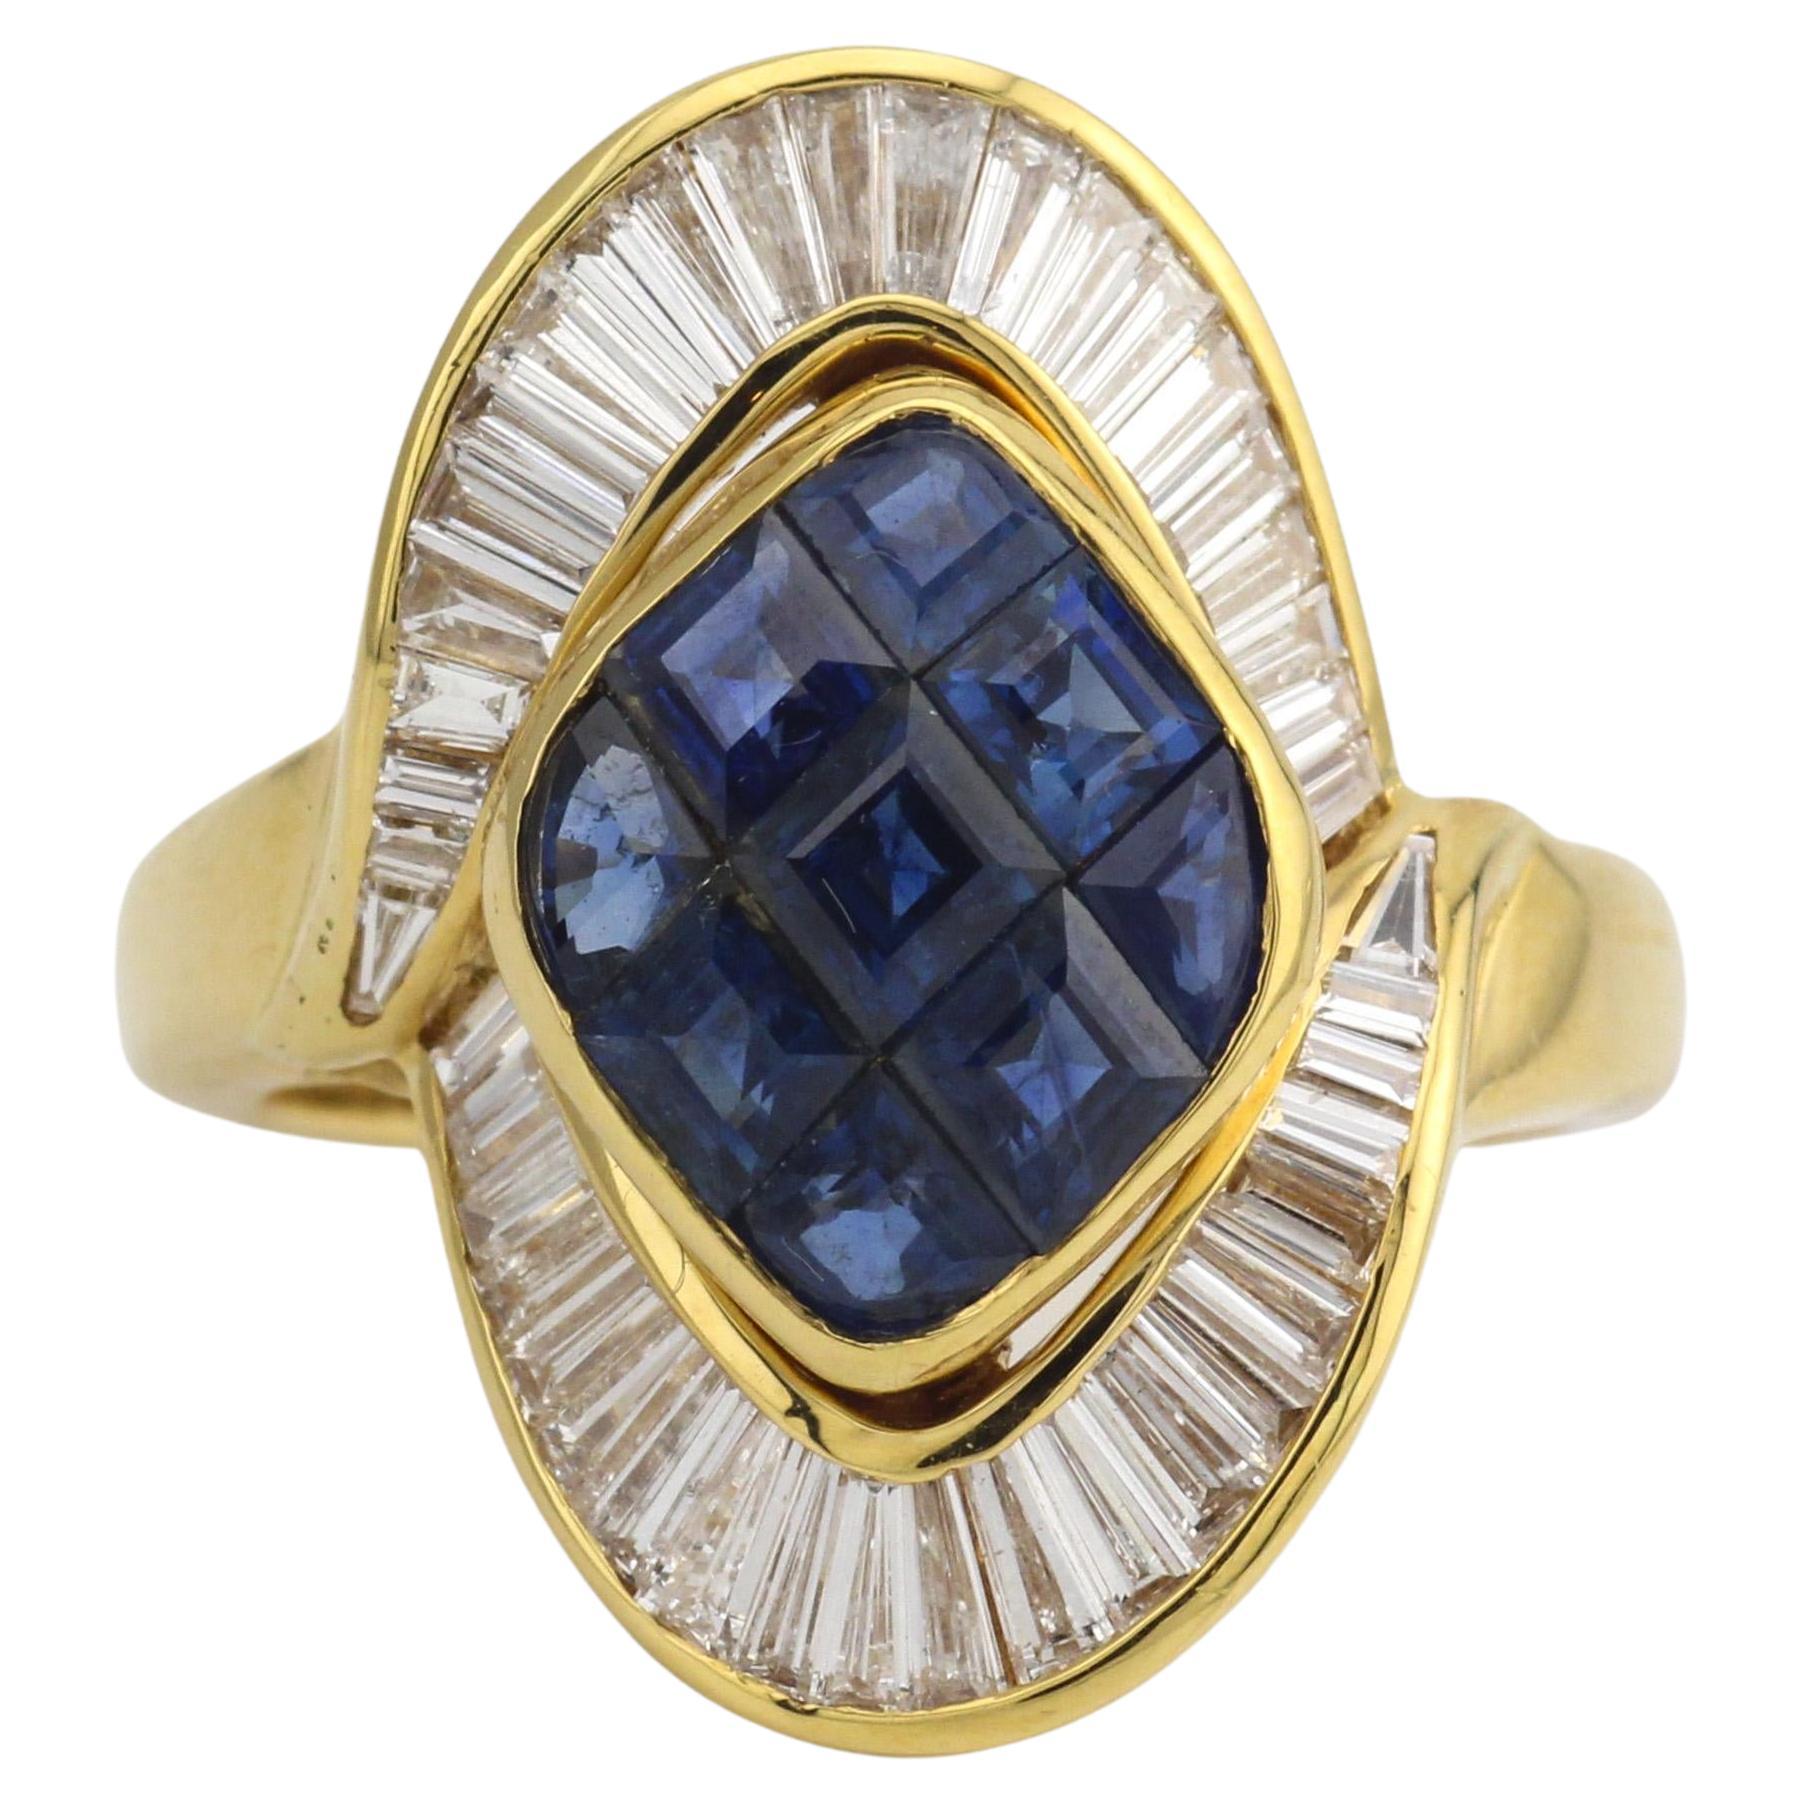 Mouawad Mystery Set Sapphire Diamond 18k Yellow Gold Ring Size 6.75